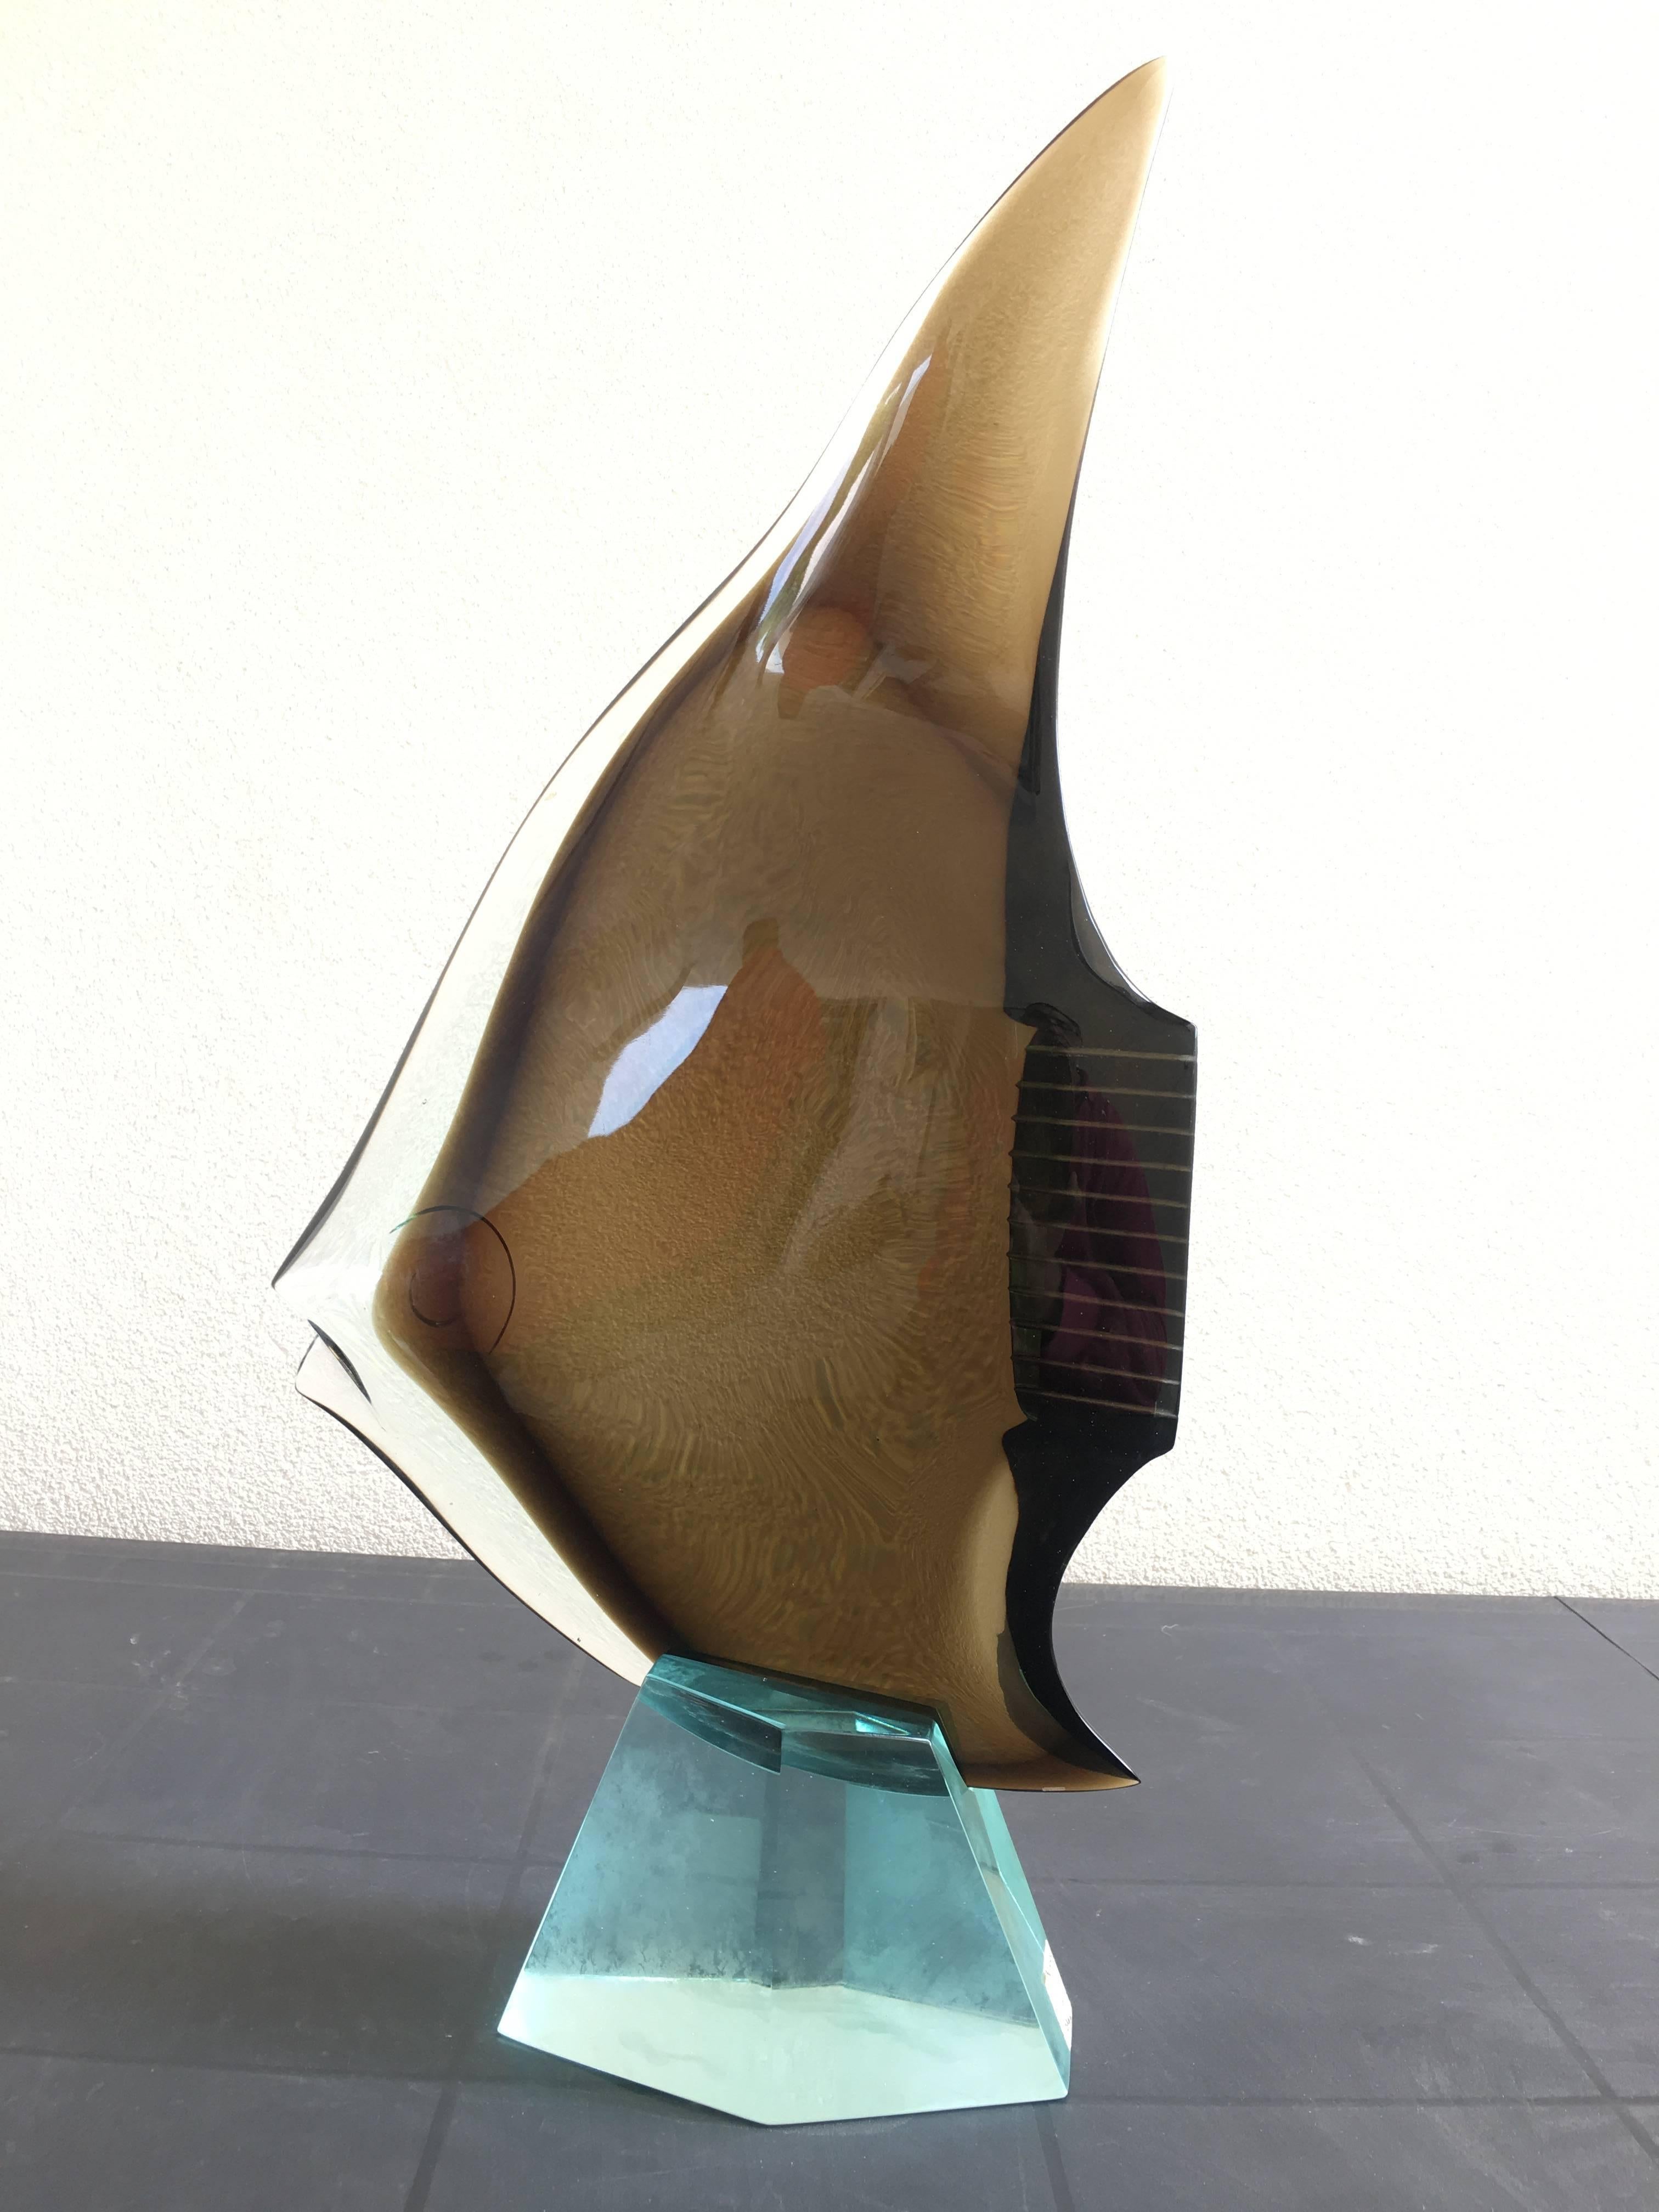 
Außergewöhnliche Skulptur des Meisters aus Muranoglas. Museumsstück.
Veröffentlicht im Katalog: Seguso vetro d'arte Glasobjekte aus Murano (1972-1973) von Marc Heiremans

